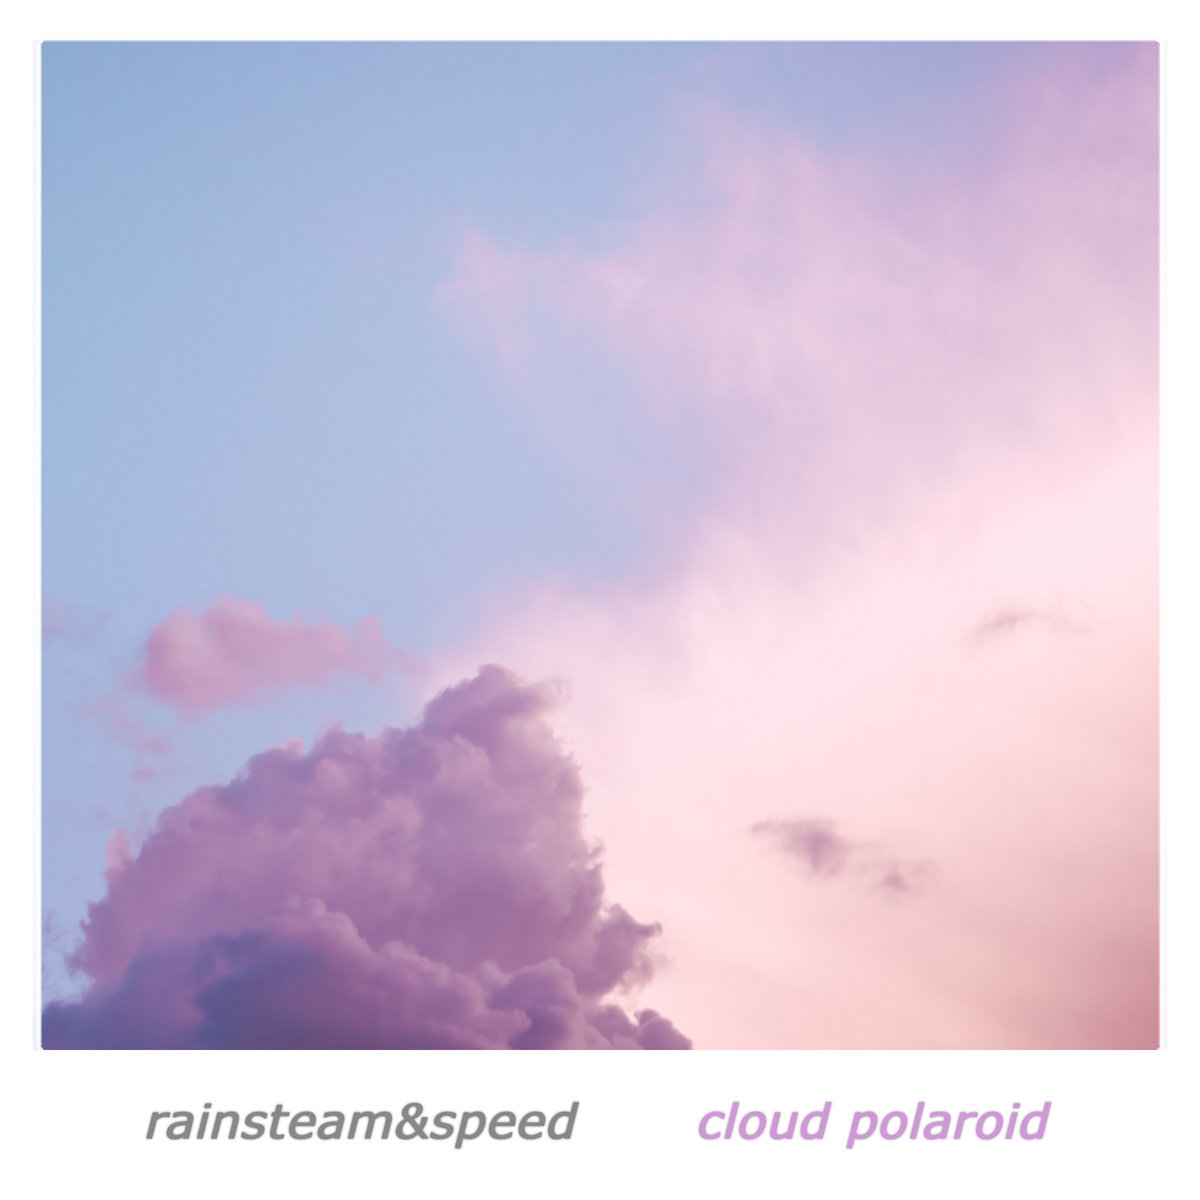 RAINSTEAM&SPEED - Cloud polaroid